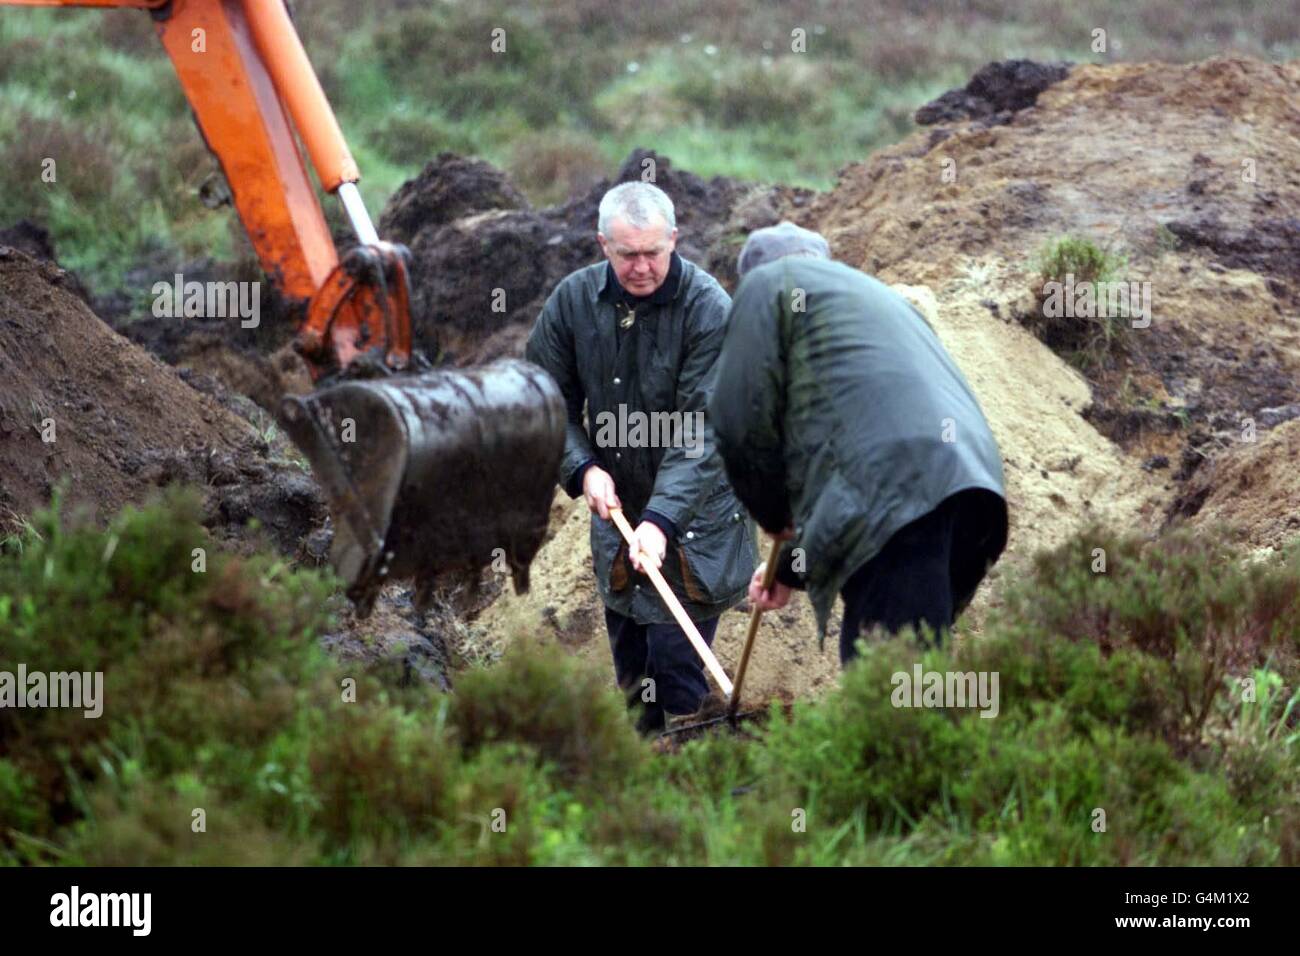 La polizia rastrella attraverso montagne di sabbia in un sito nel Wicklow, dove continuano la caccia al corpo di una delle vittime dell'IRA che sono scomparse da oltre vent'anni. Gli intermediari hanno rivelato il sito alla Commissione per l'ubicazione dei resti delle vittime. Foto Stock